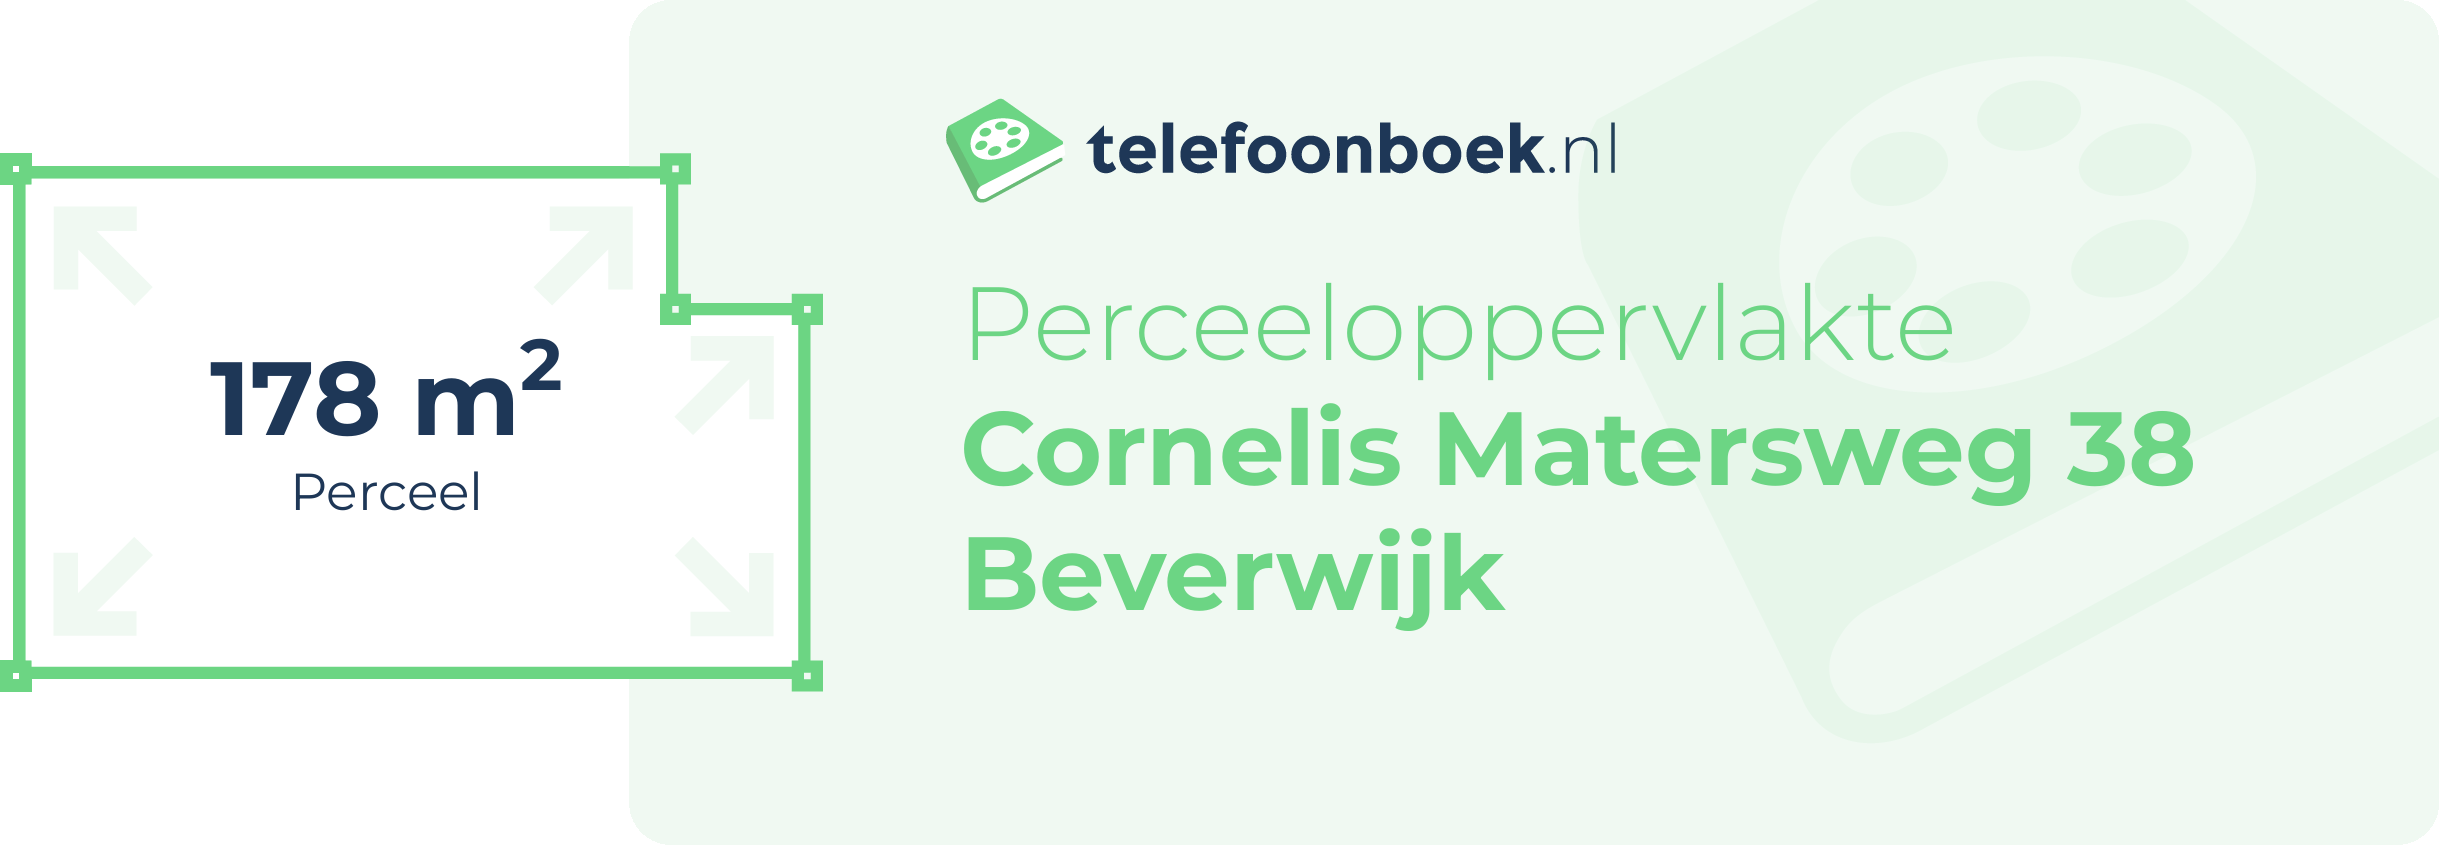 Perceeloppervlakte Cornelis Matersweg 38 Beverwijk